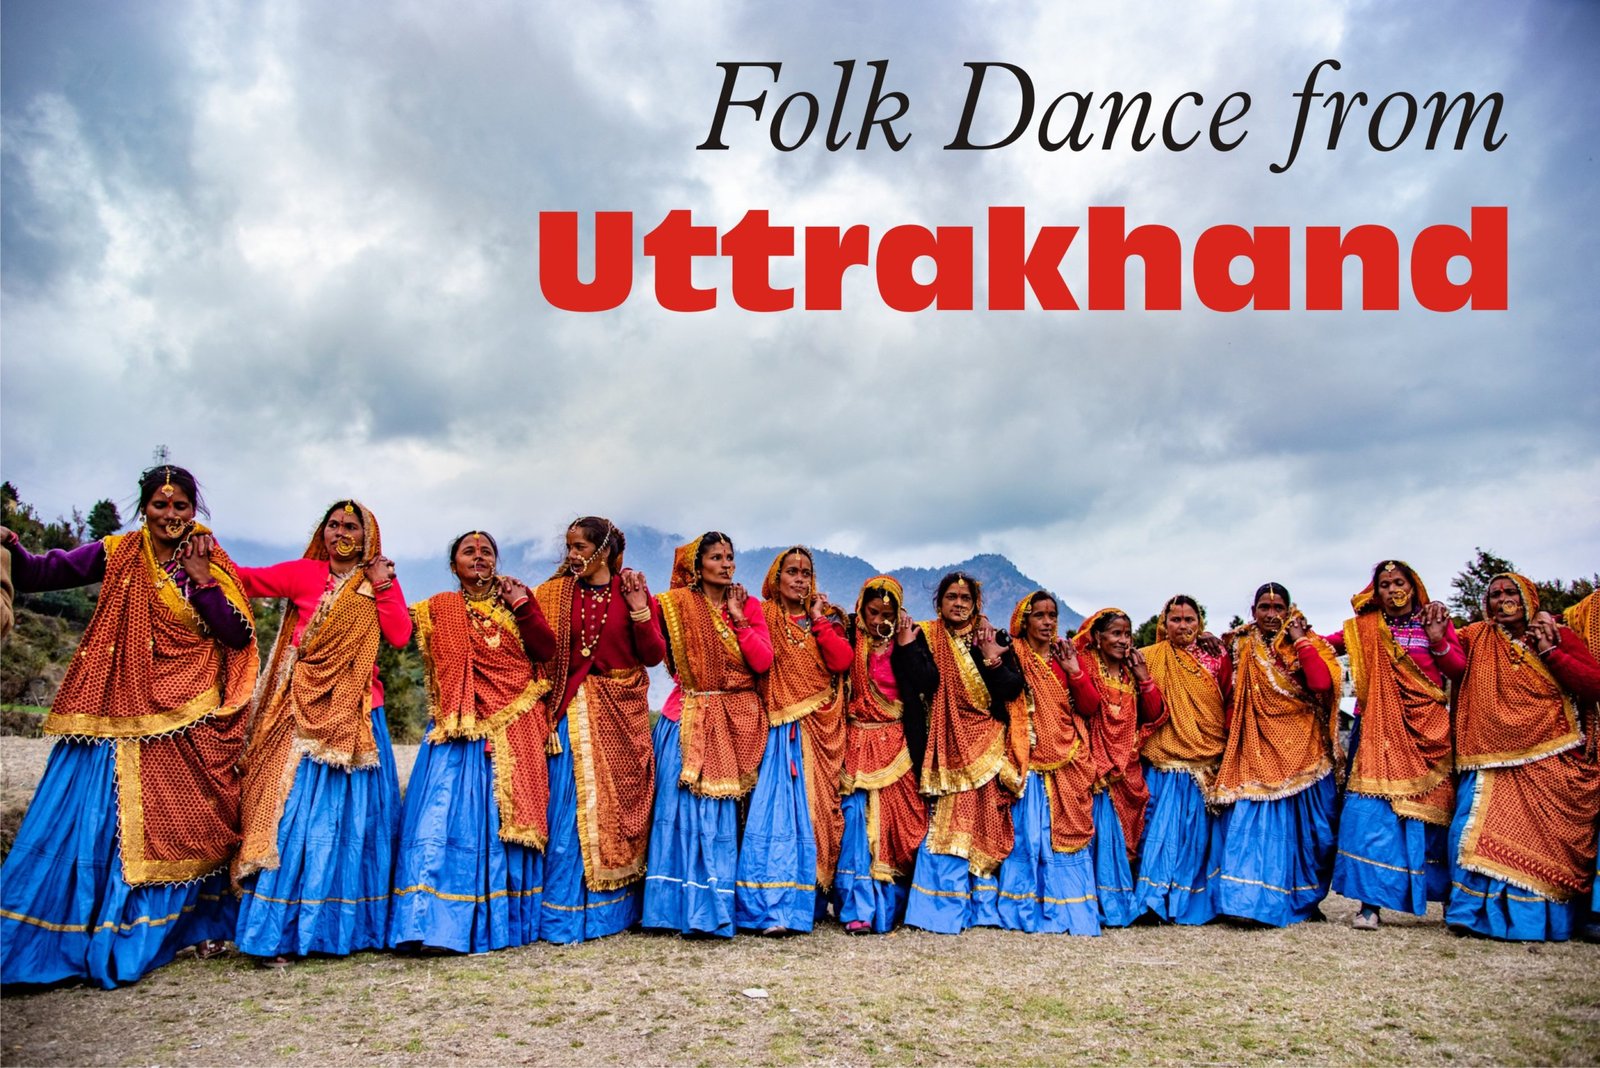 Folk dance from Uttrakhand